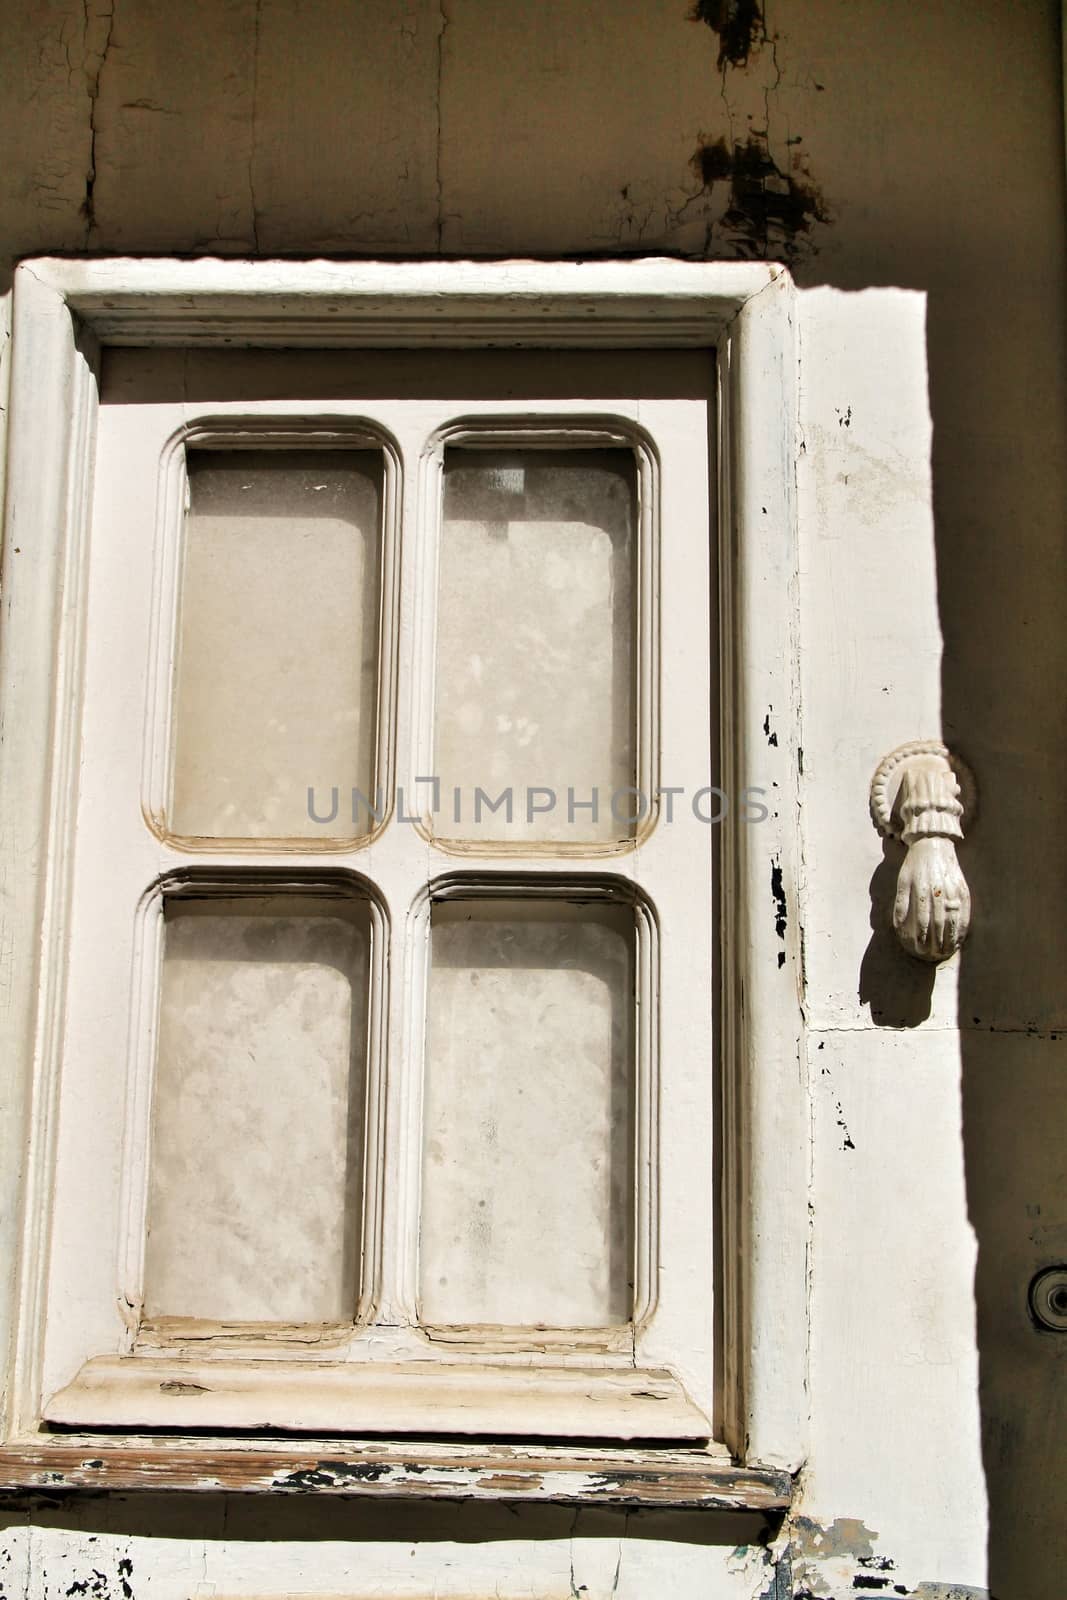 Doorknocker with hand shape on old wooden door by soniabonet